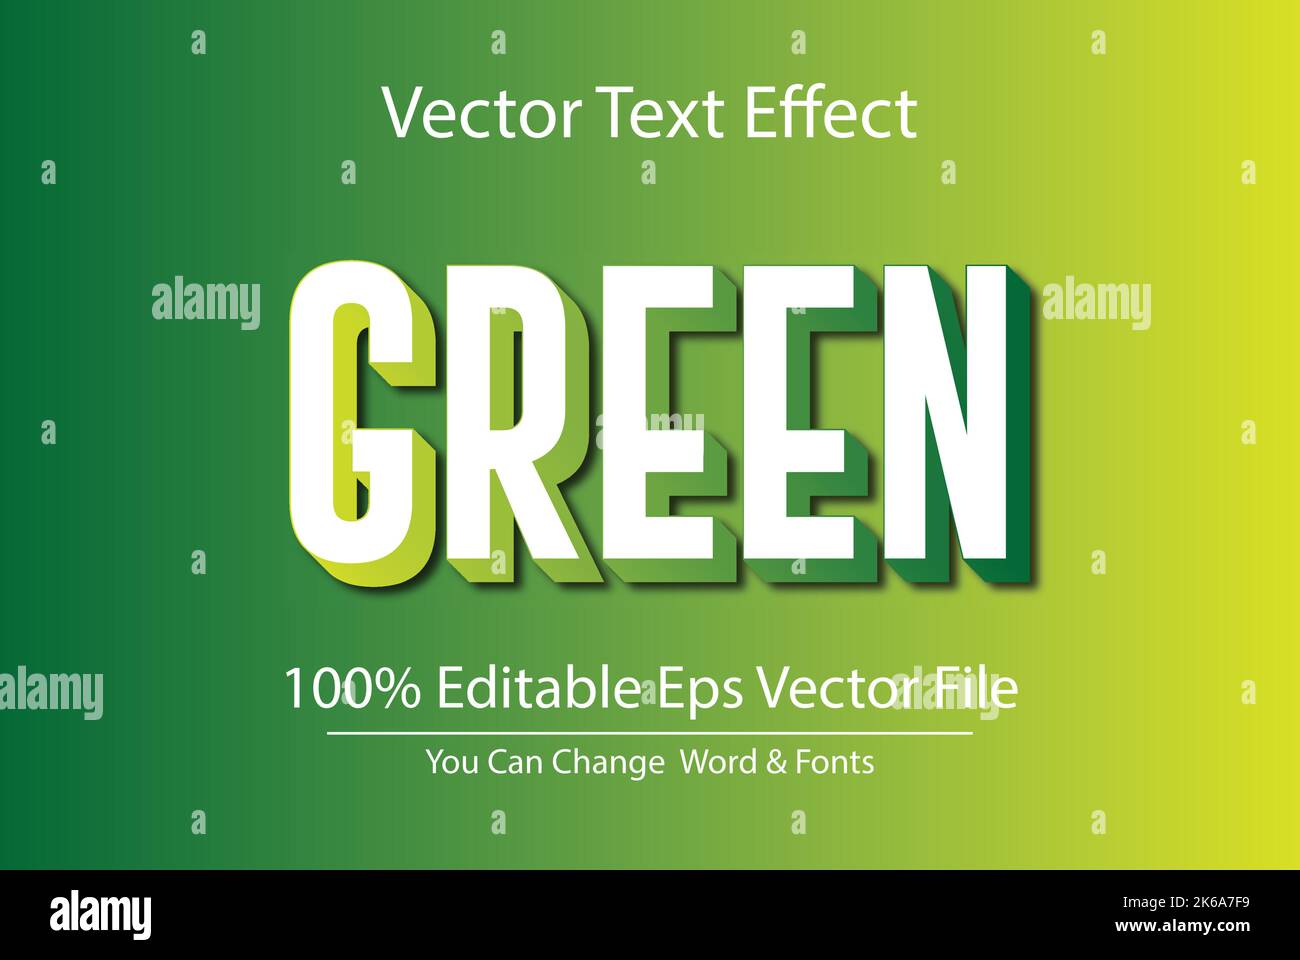 Disegno vettoriale di effetto testo 3D modificabile Illustrazione Vettoriale